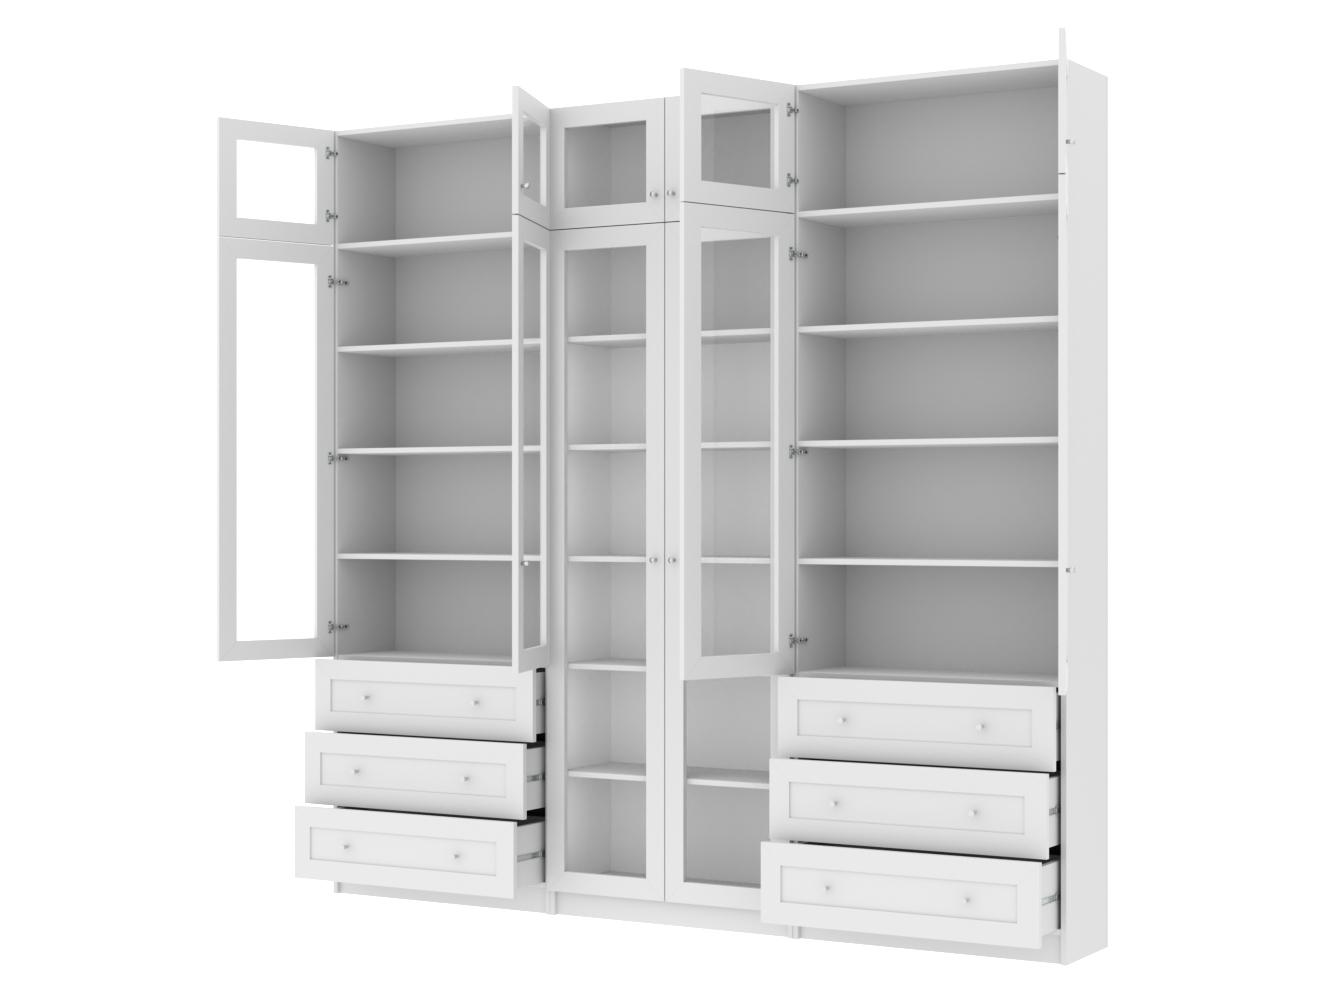 Изображение товара Книжный шкаф Билли 370 white ИКЕА (IKEA), 240x30x237 см на сайте adeta.ru